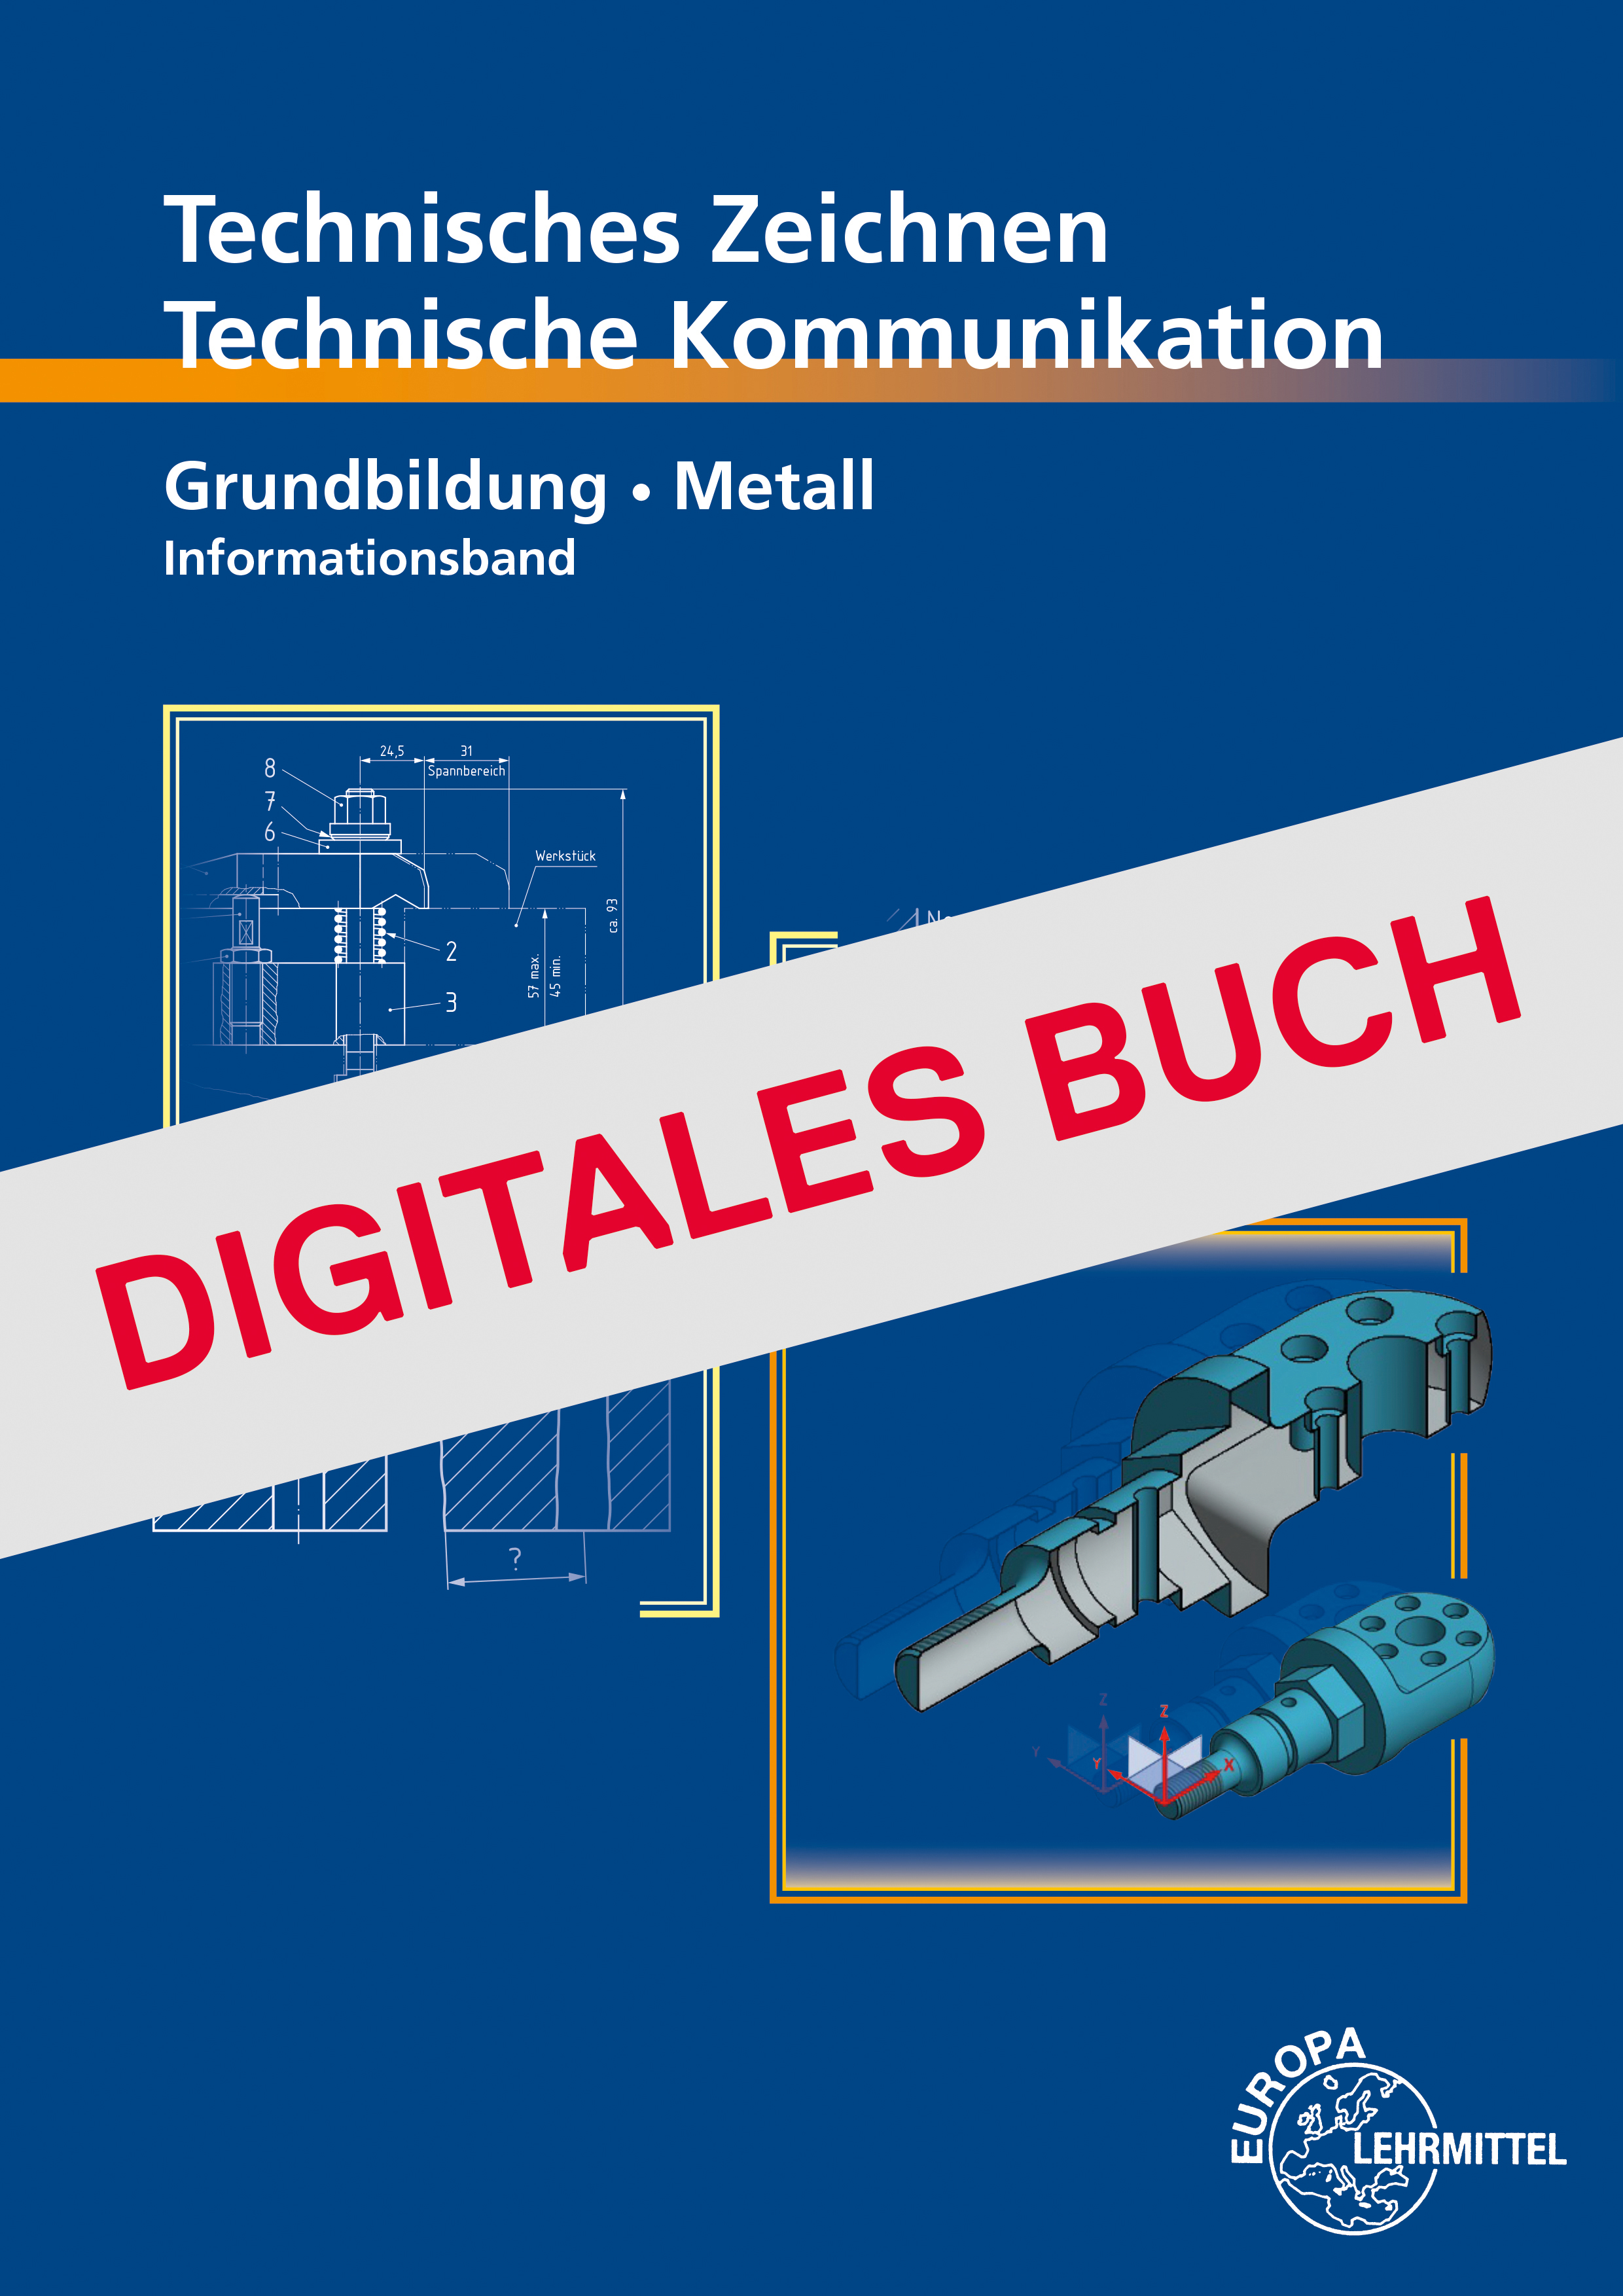 Technische Kommunikation Metall Grundbildung - Informationsband - Digitales Buch